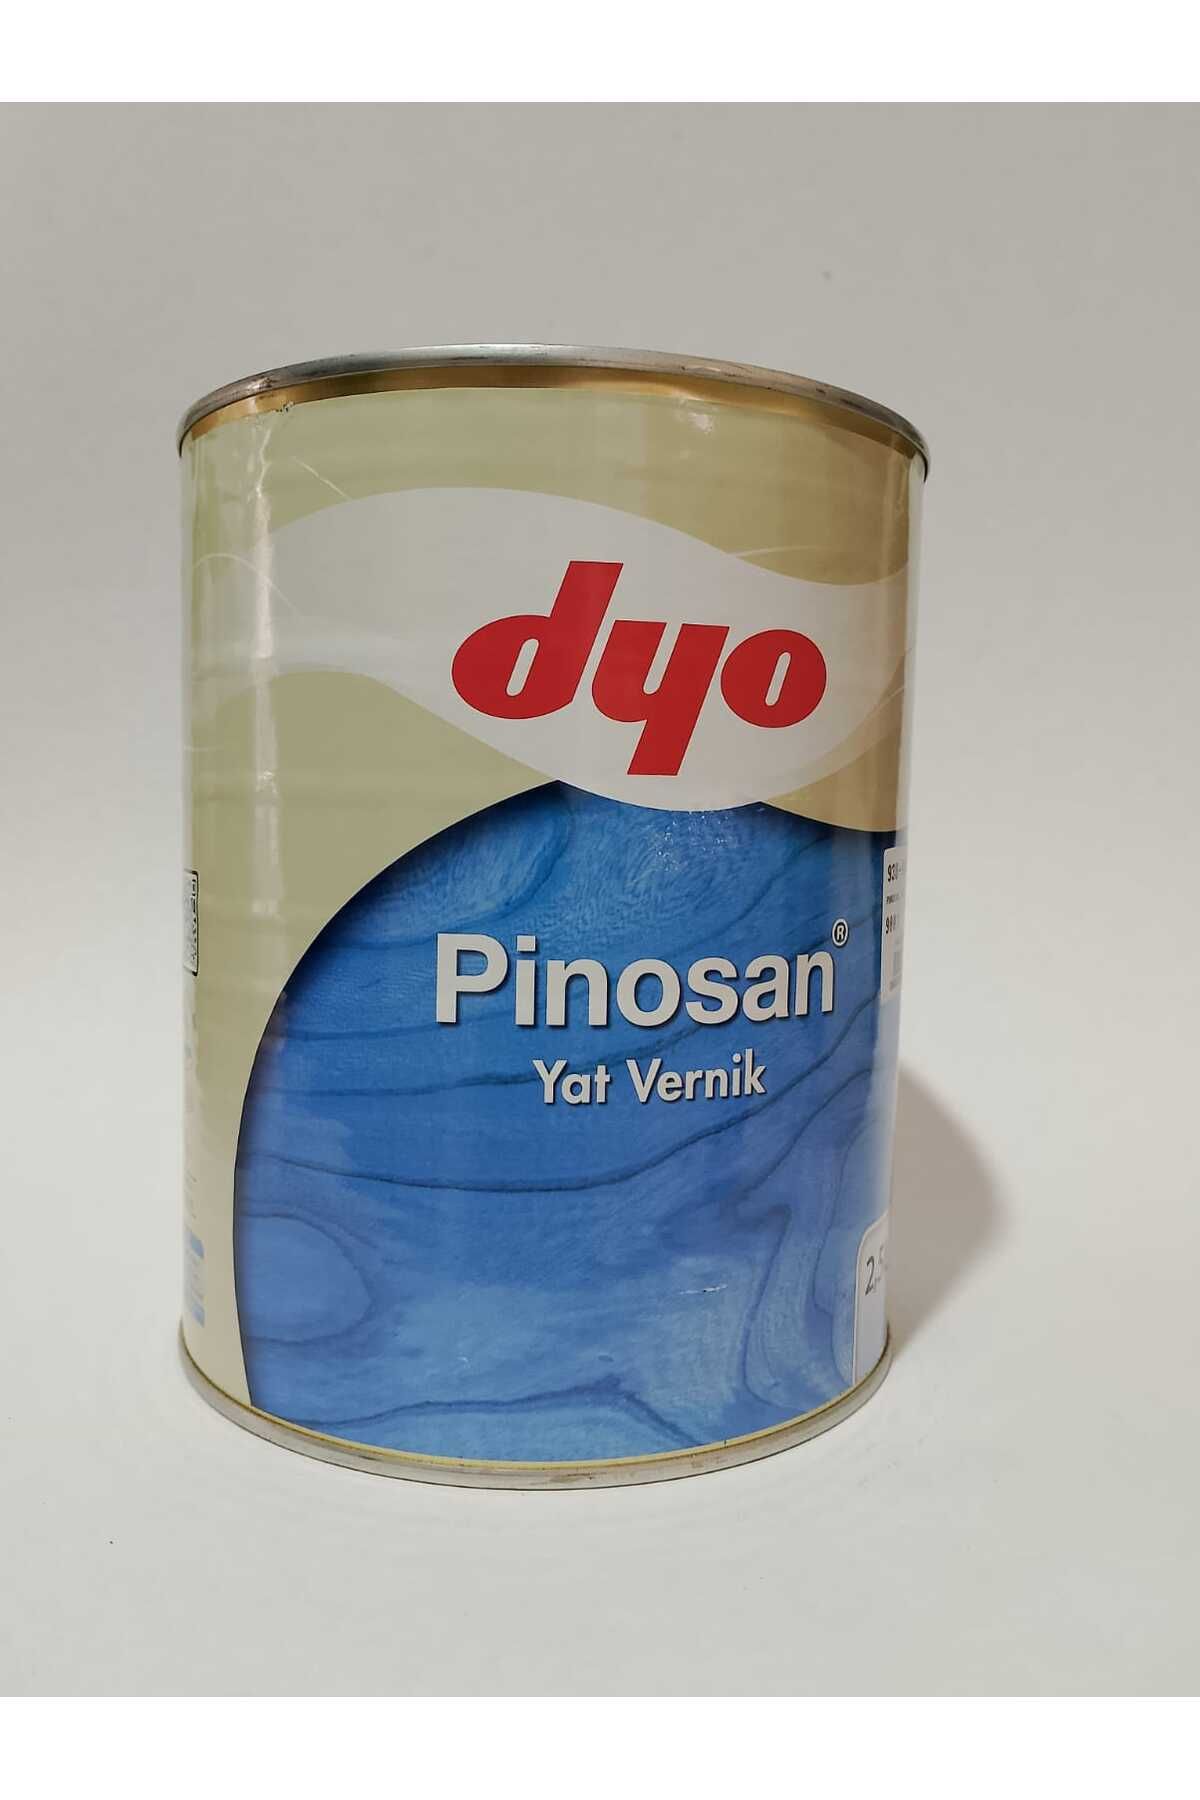 Dyo Pinosan Yat Verniği 2,5 LT Şeffaf